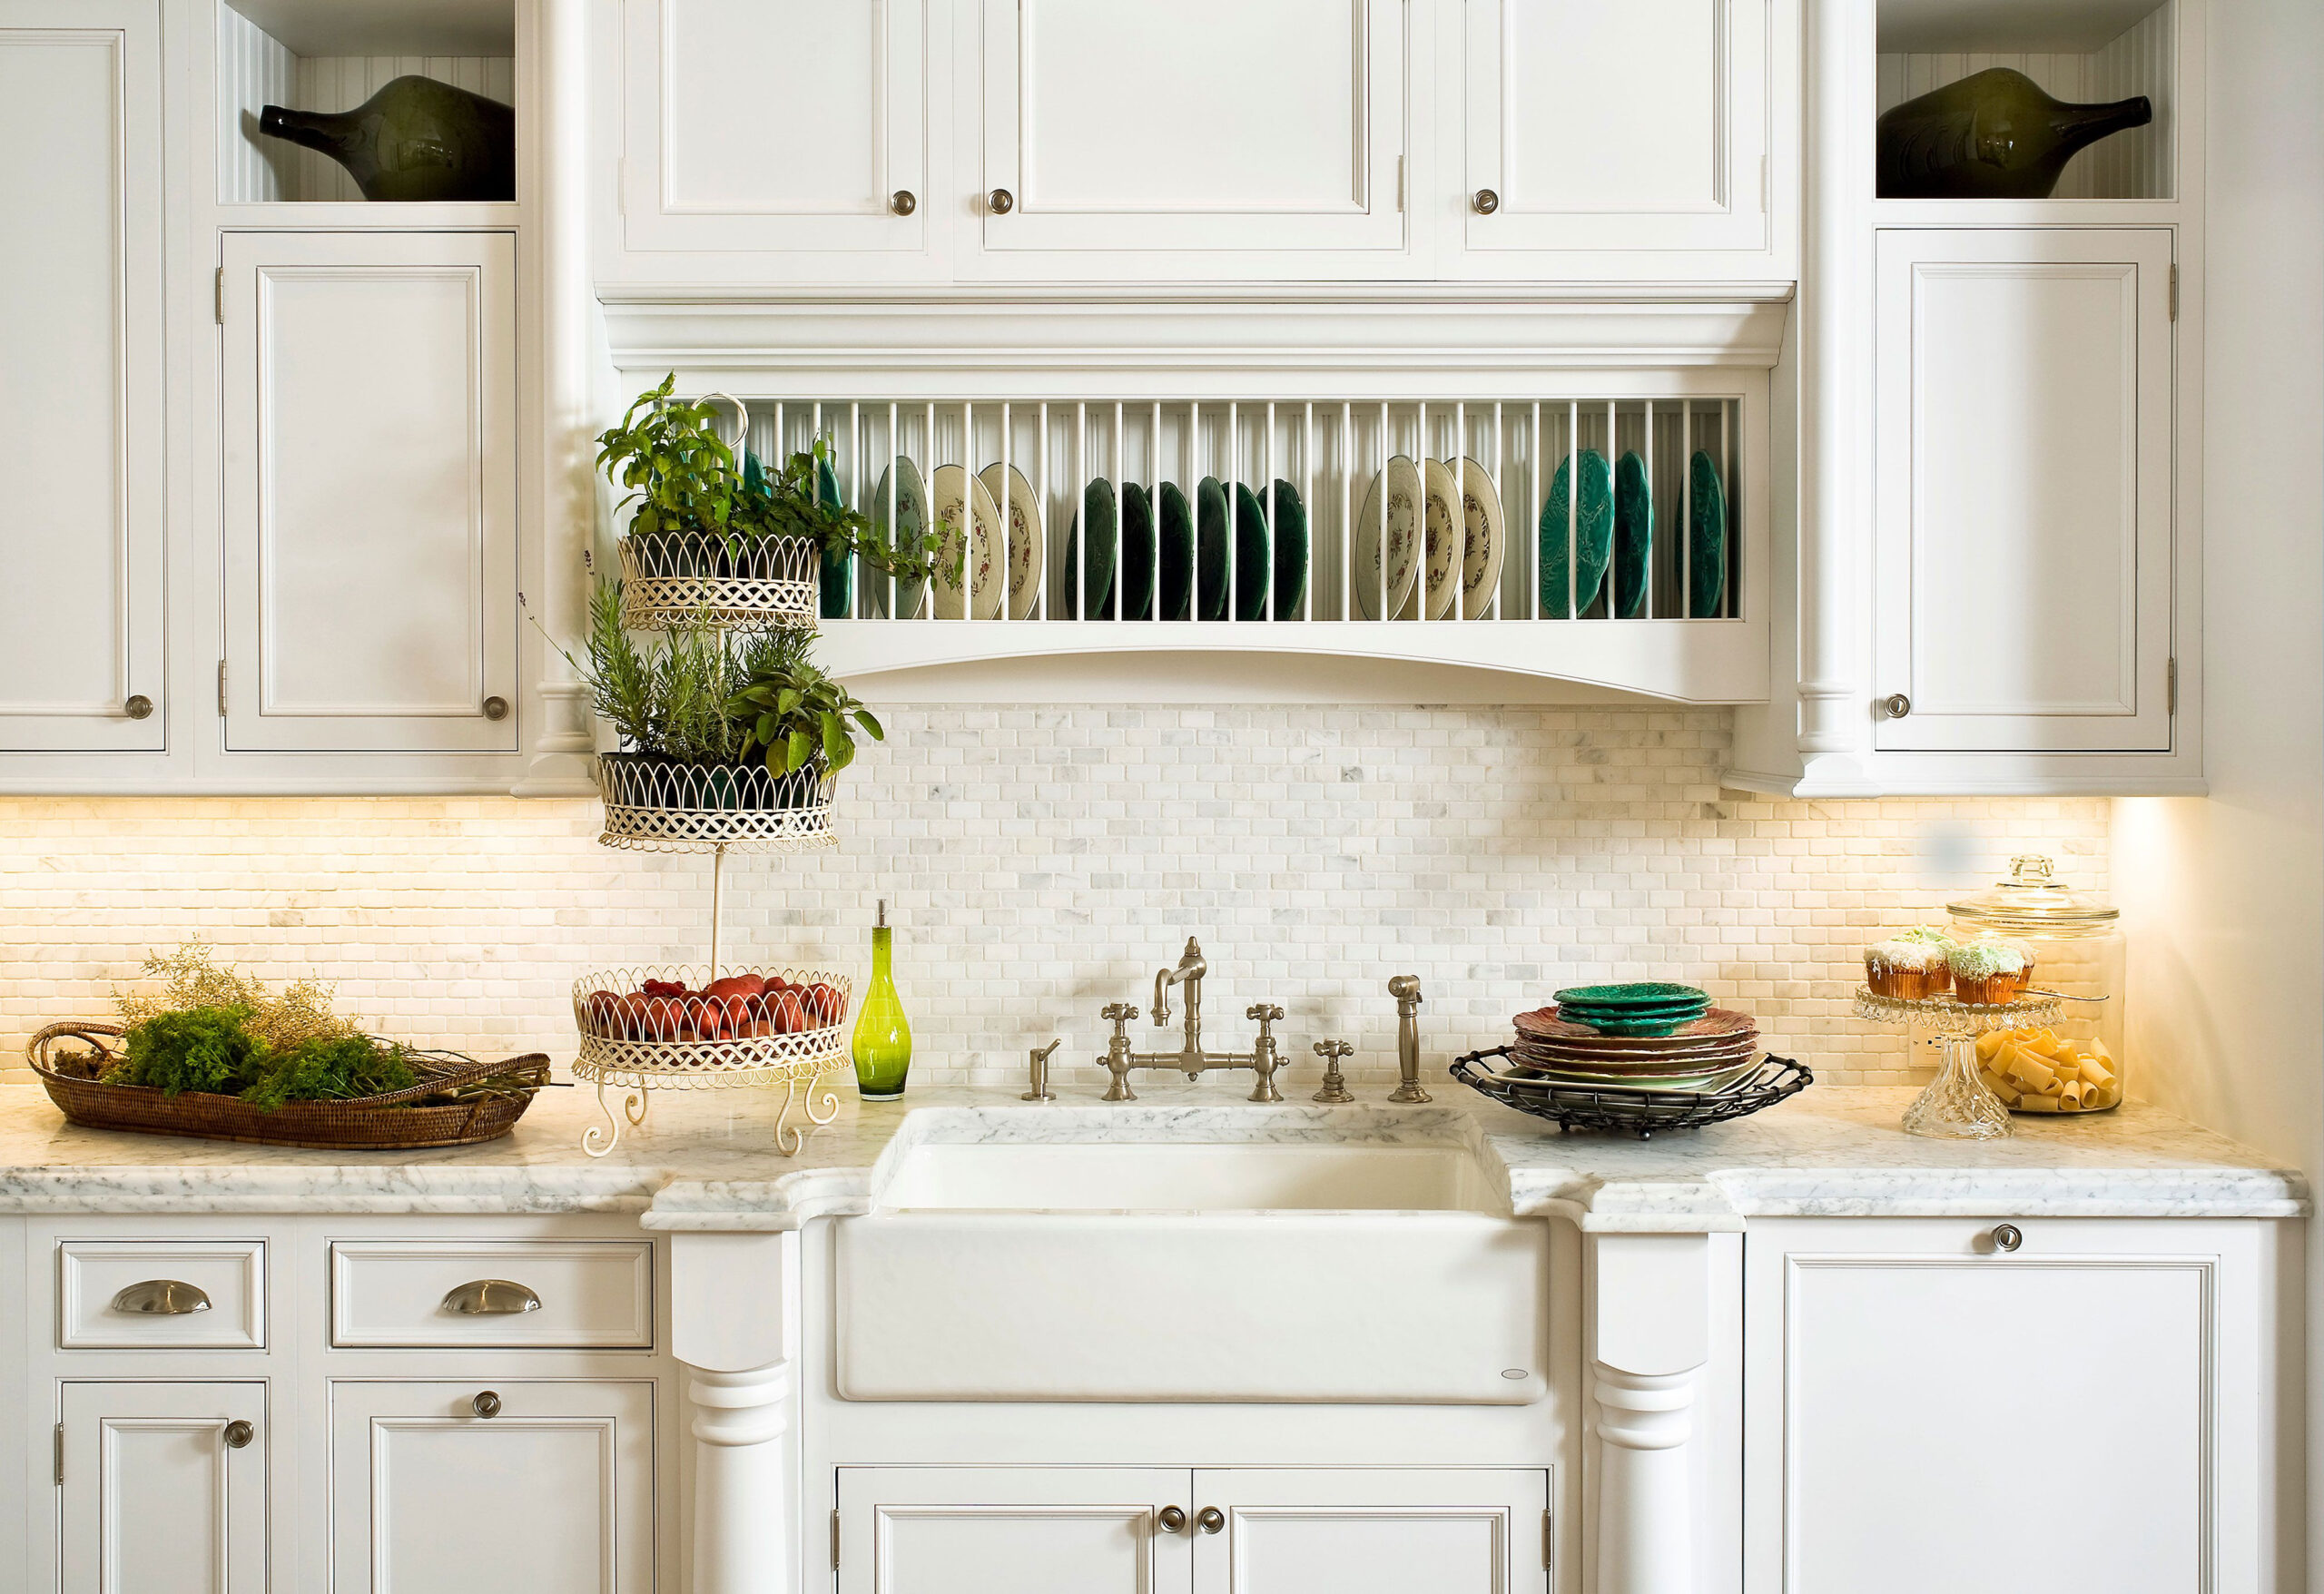 These White Backsplash Ideas Will Brighten Up Your Kitchen Design